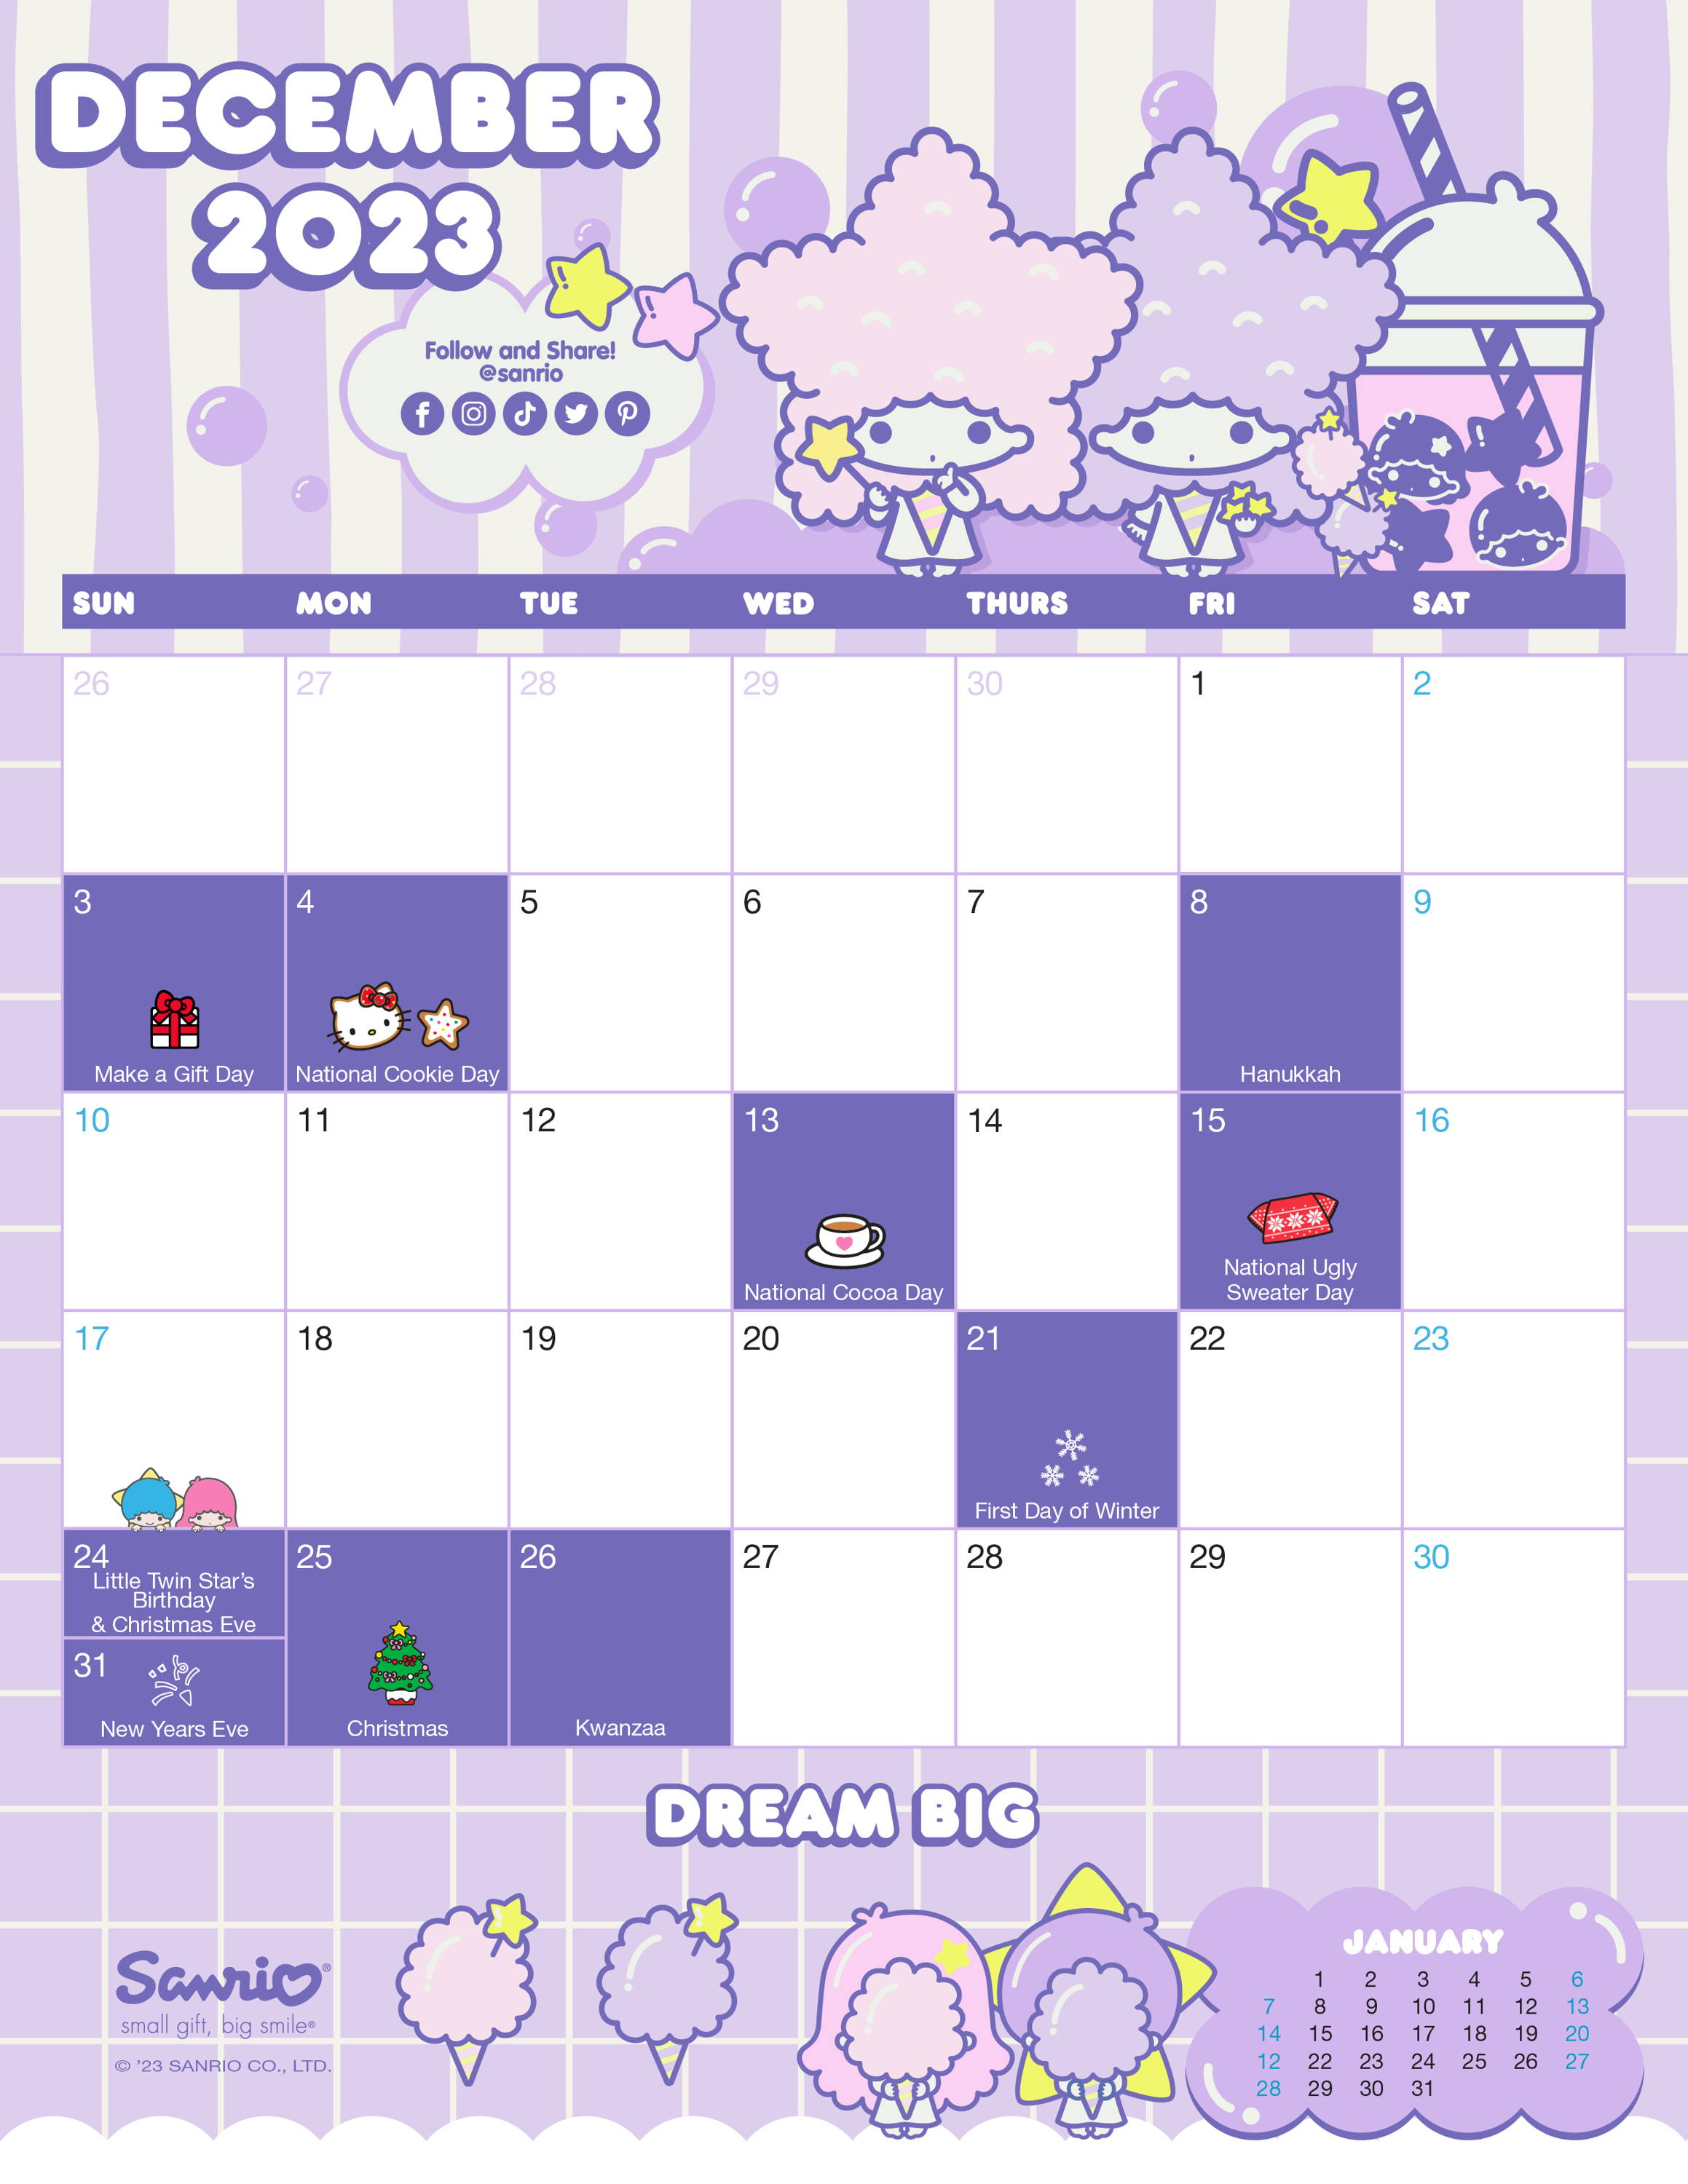 Sanrio Friend of the Month December 2023  Calendar featuring LittleTwinStars.. 